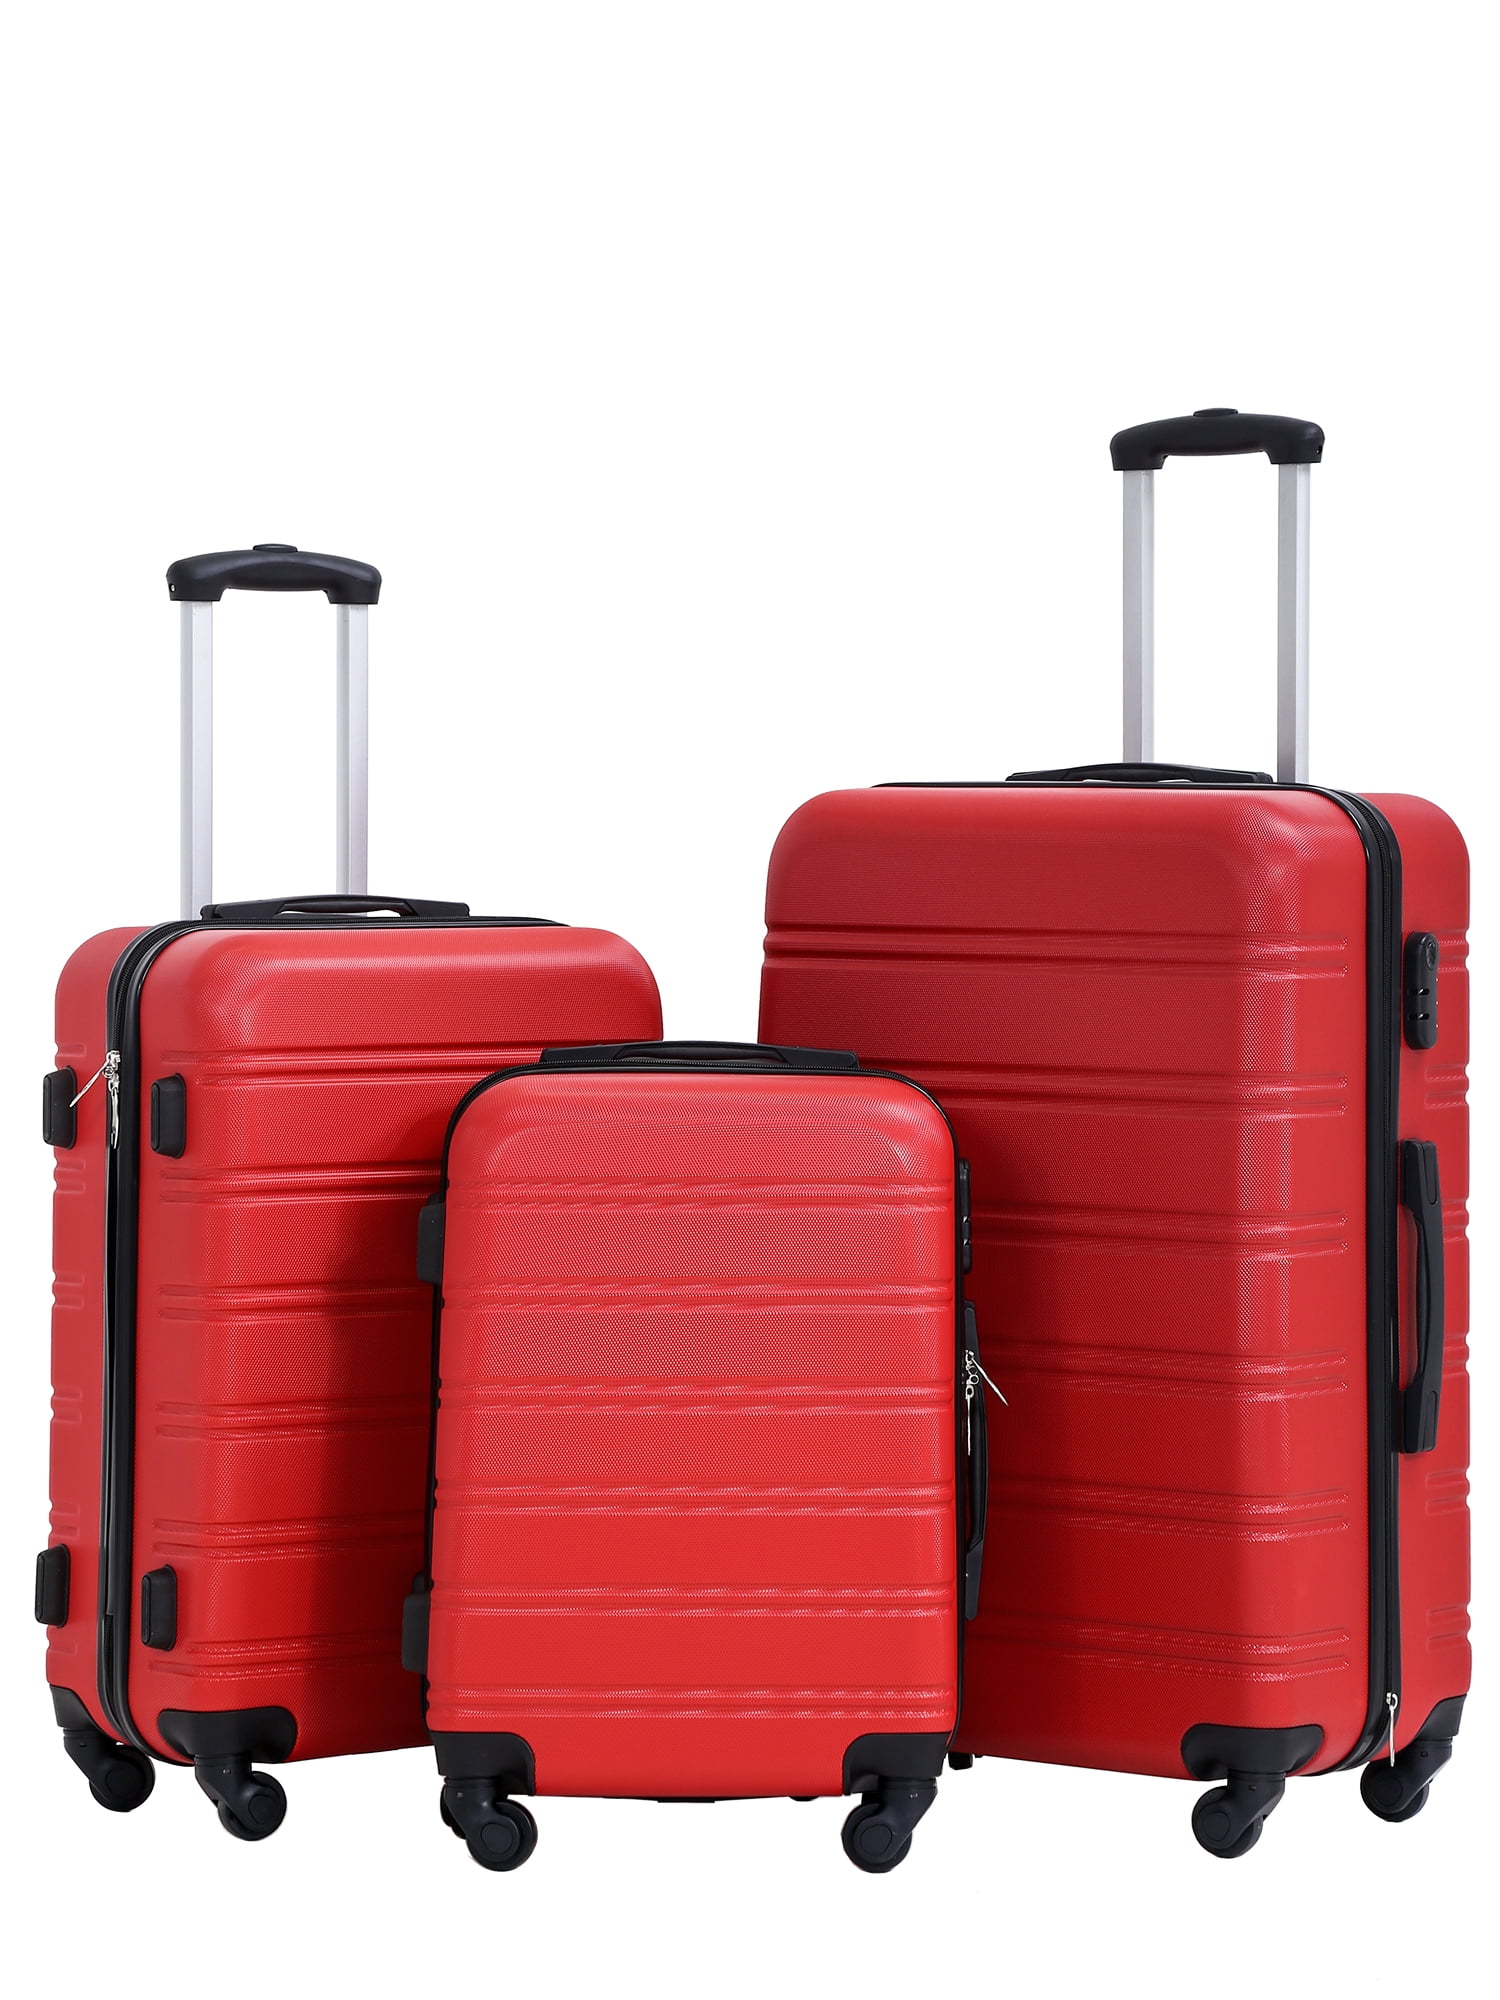 【せんのでご】 Recaceik Luggage 3 Piece Suitcase Set with Spinner Wheels TSA ...